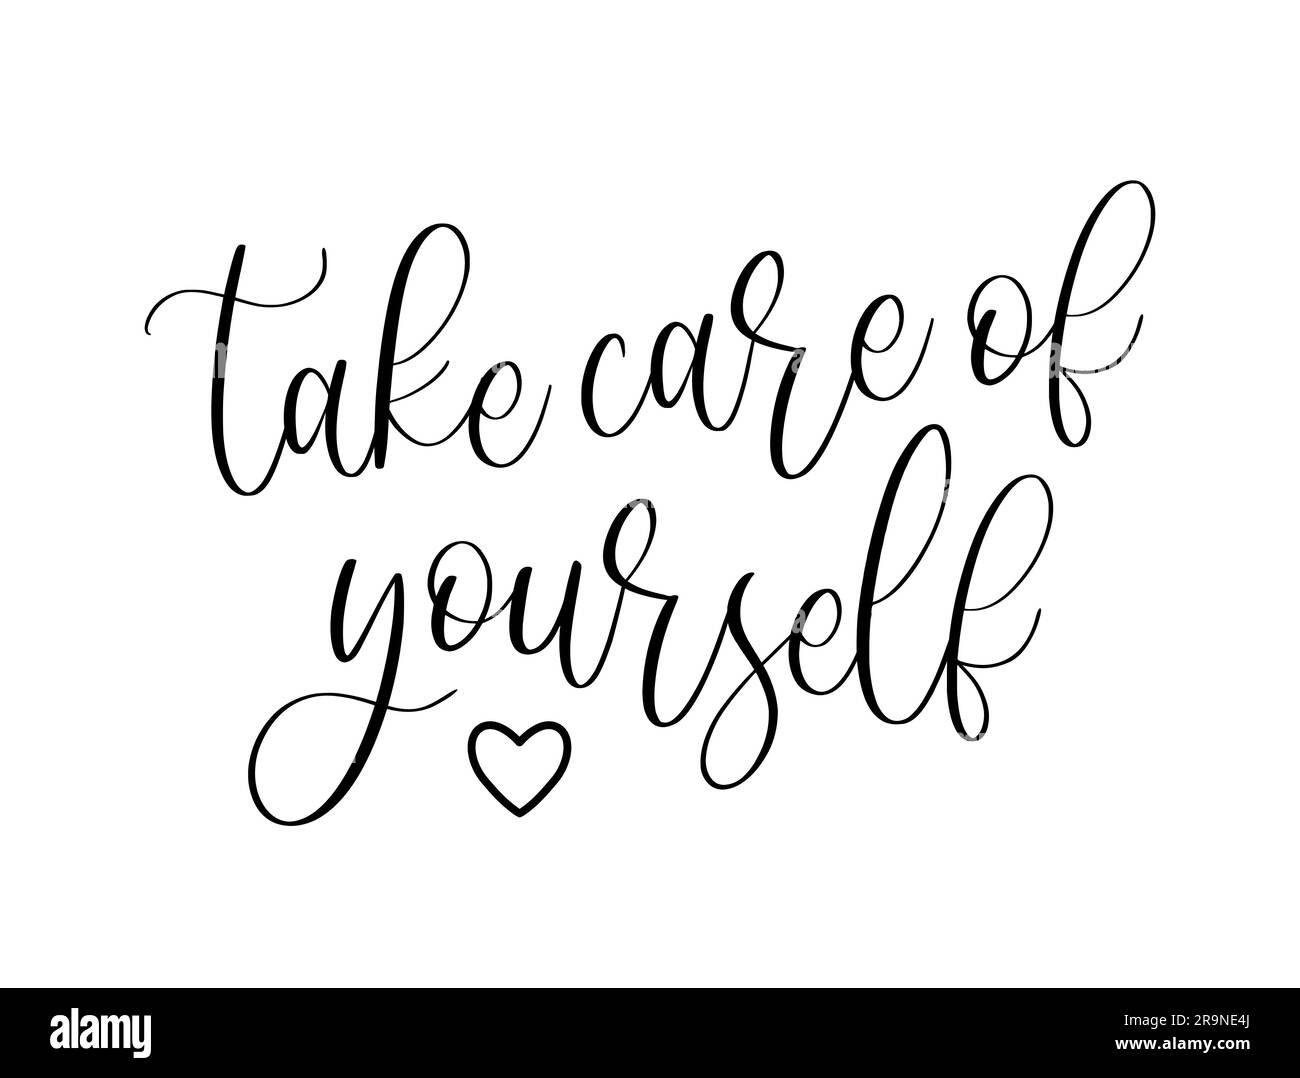 Illustrazione vettoriale della citazione scritta "prenditi cura di te". Auto-cura e concetto di tendenza positivo per il corpo. Stampa moderna del testo calligrafico per fas Illustrazione Vettoriale